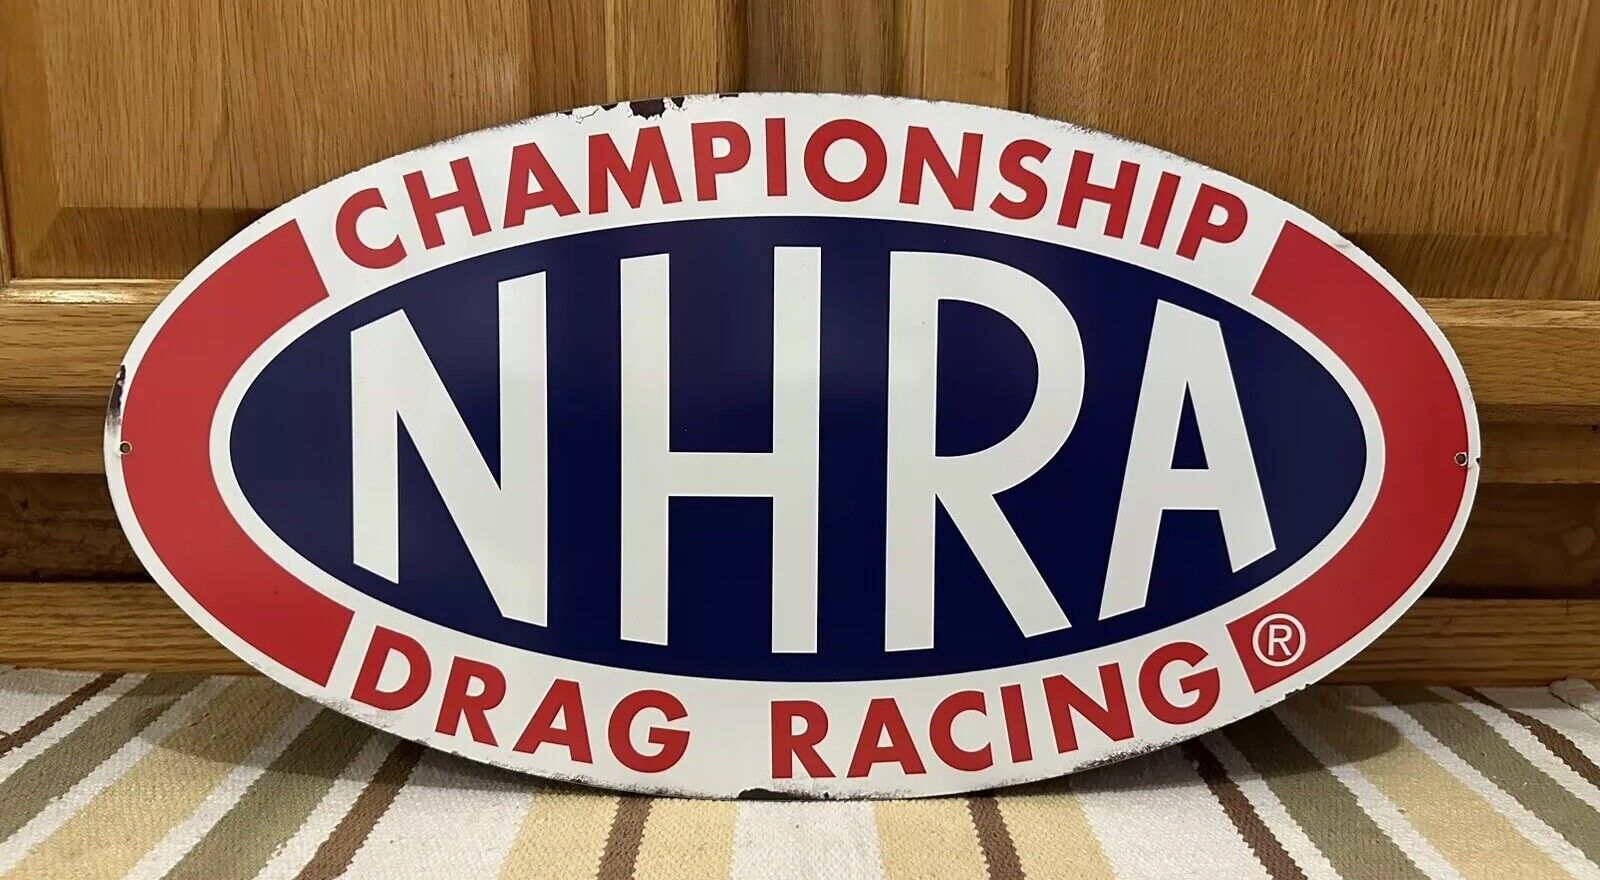 NHRA Championship Drag Racing Metal Sign Garage Pits Vintage Style Wall Decor